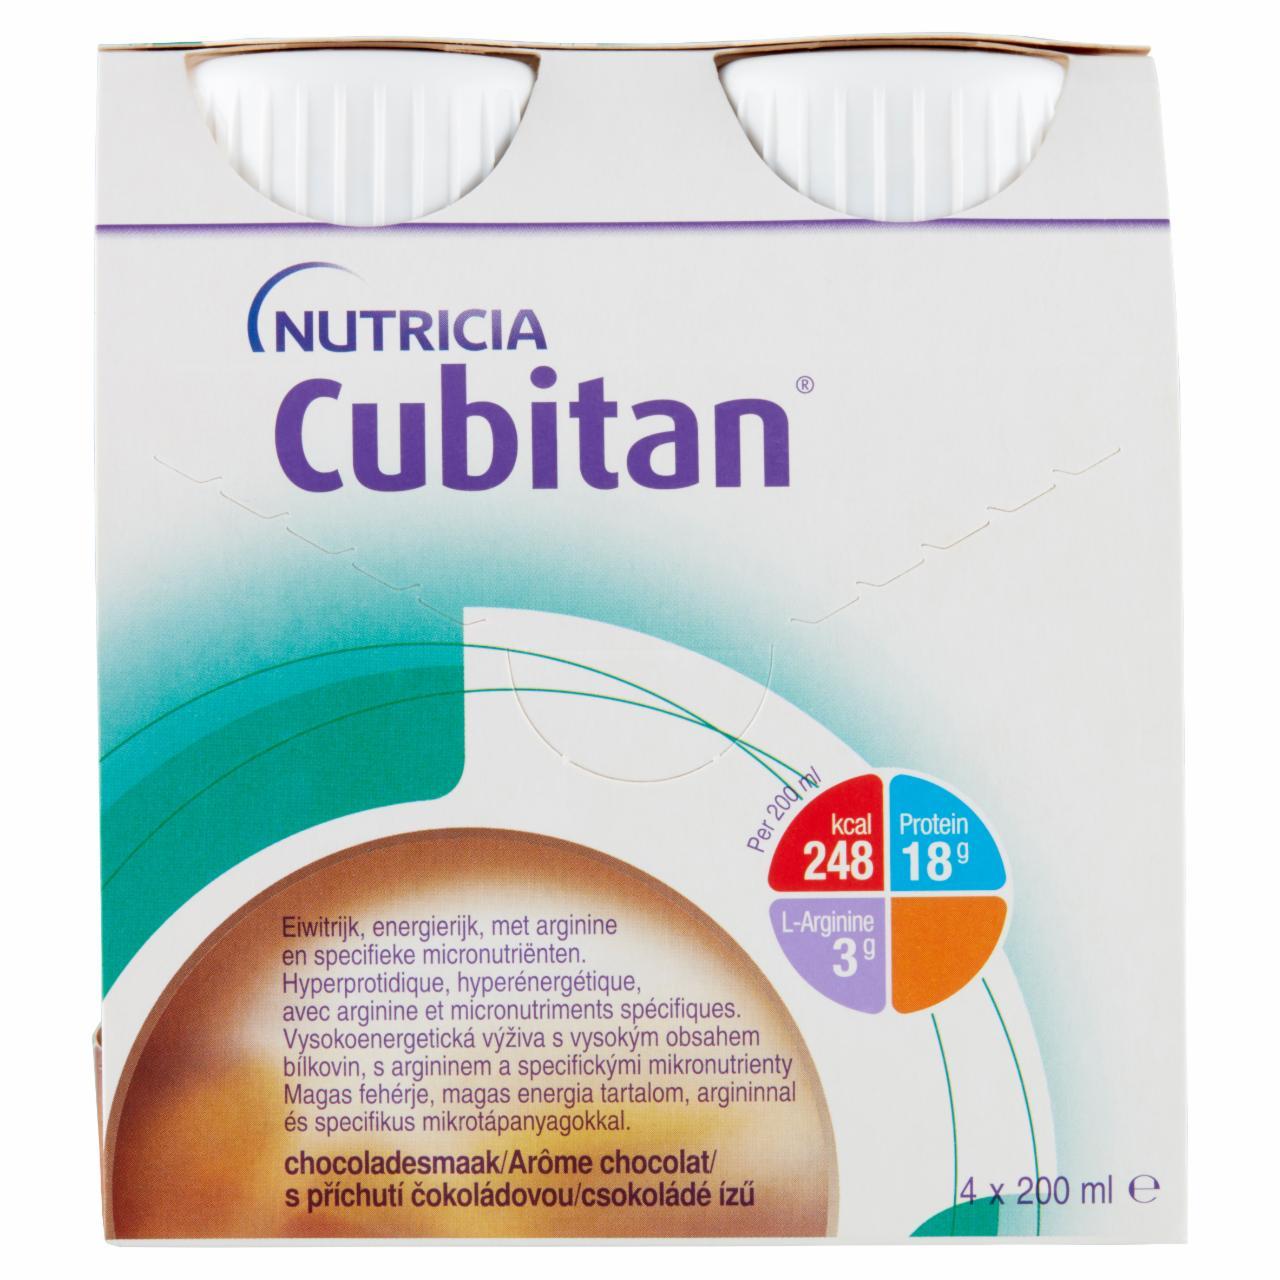 Képek - Cubitan csokoládé ízű speciális gyógyászati célra szánt élelmiszer 4 x 200 ml